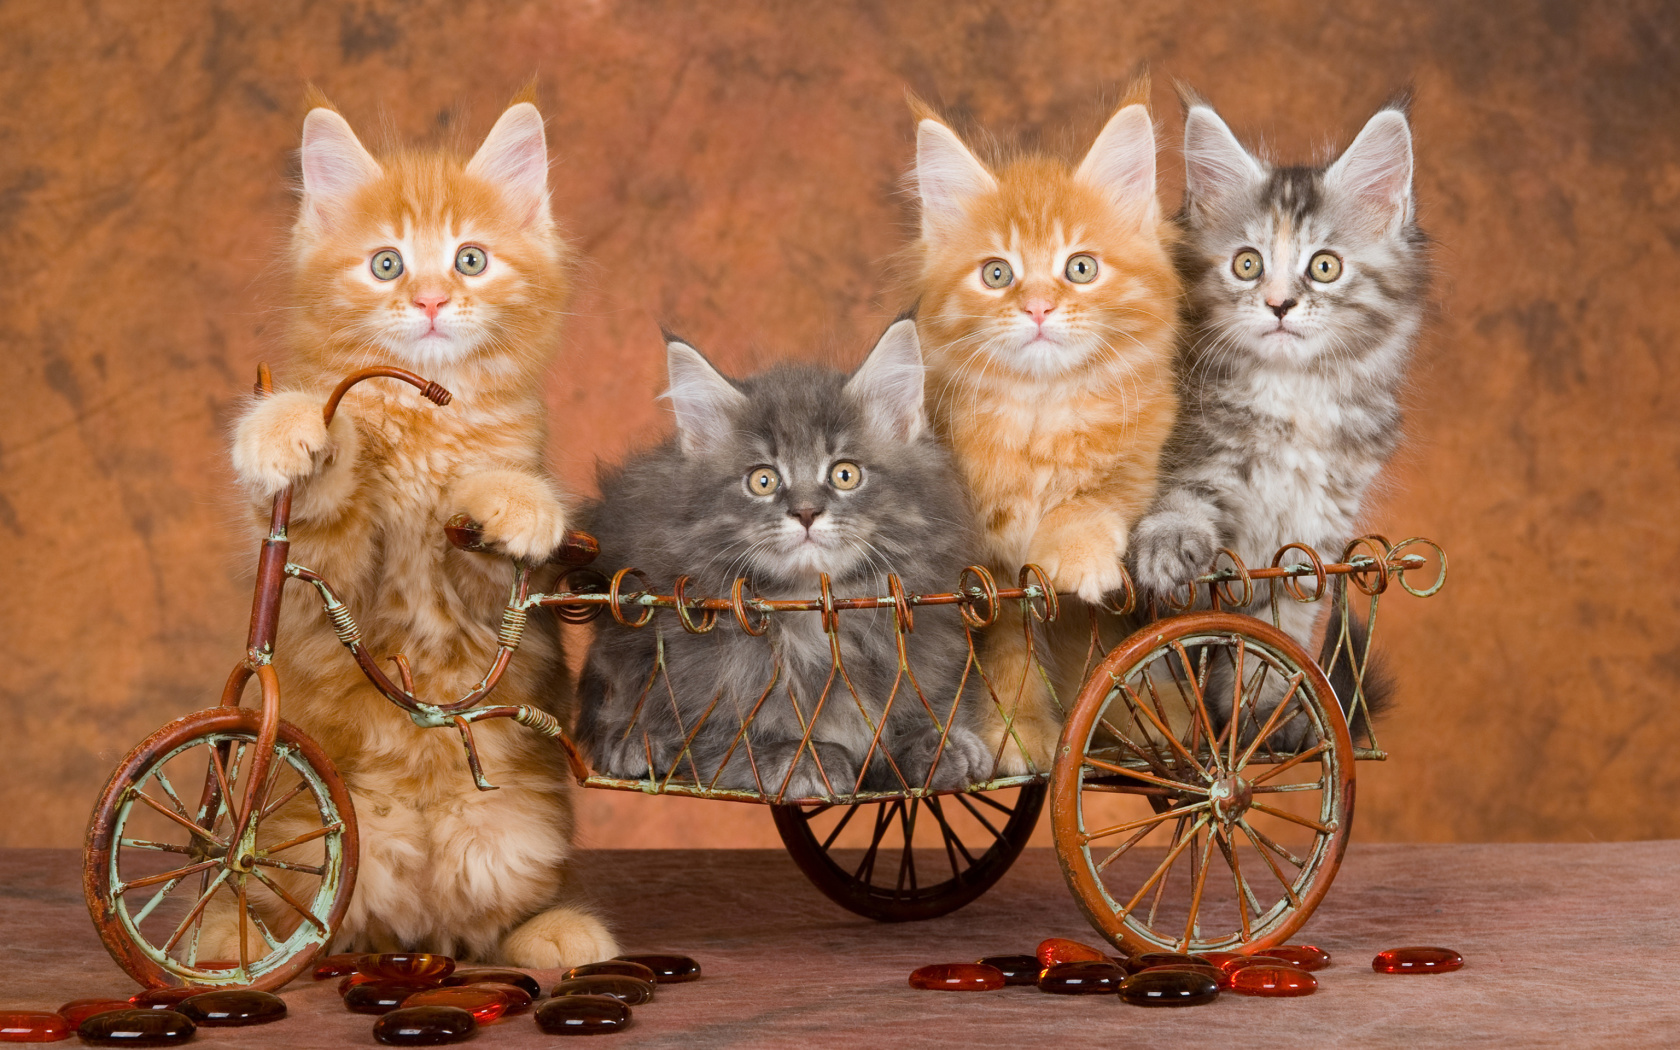 Das Young Kittens Wallpaper 1680x1050